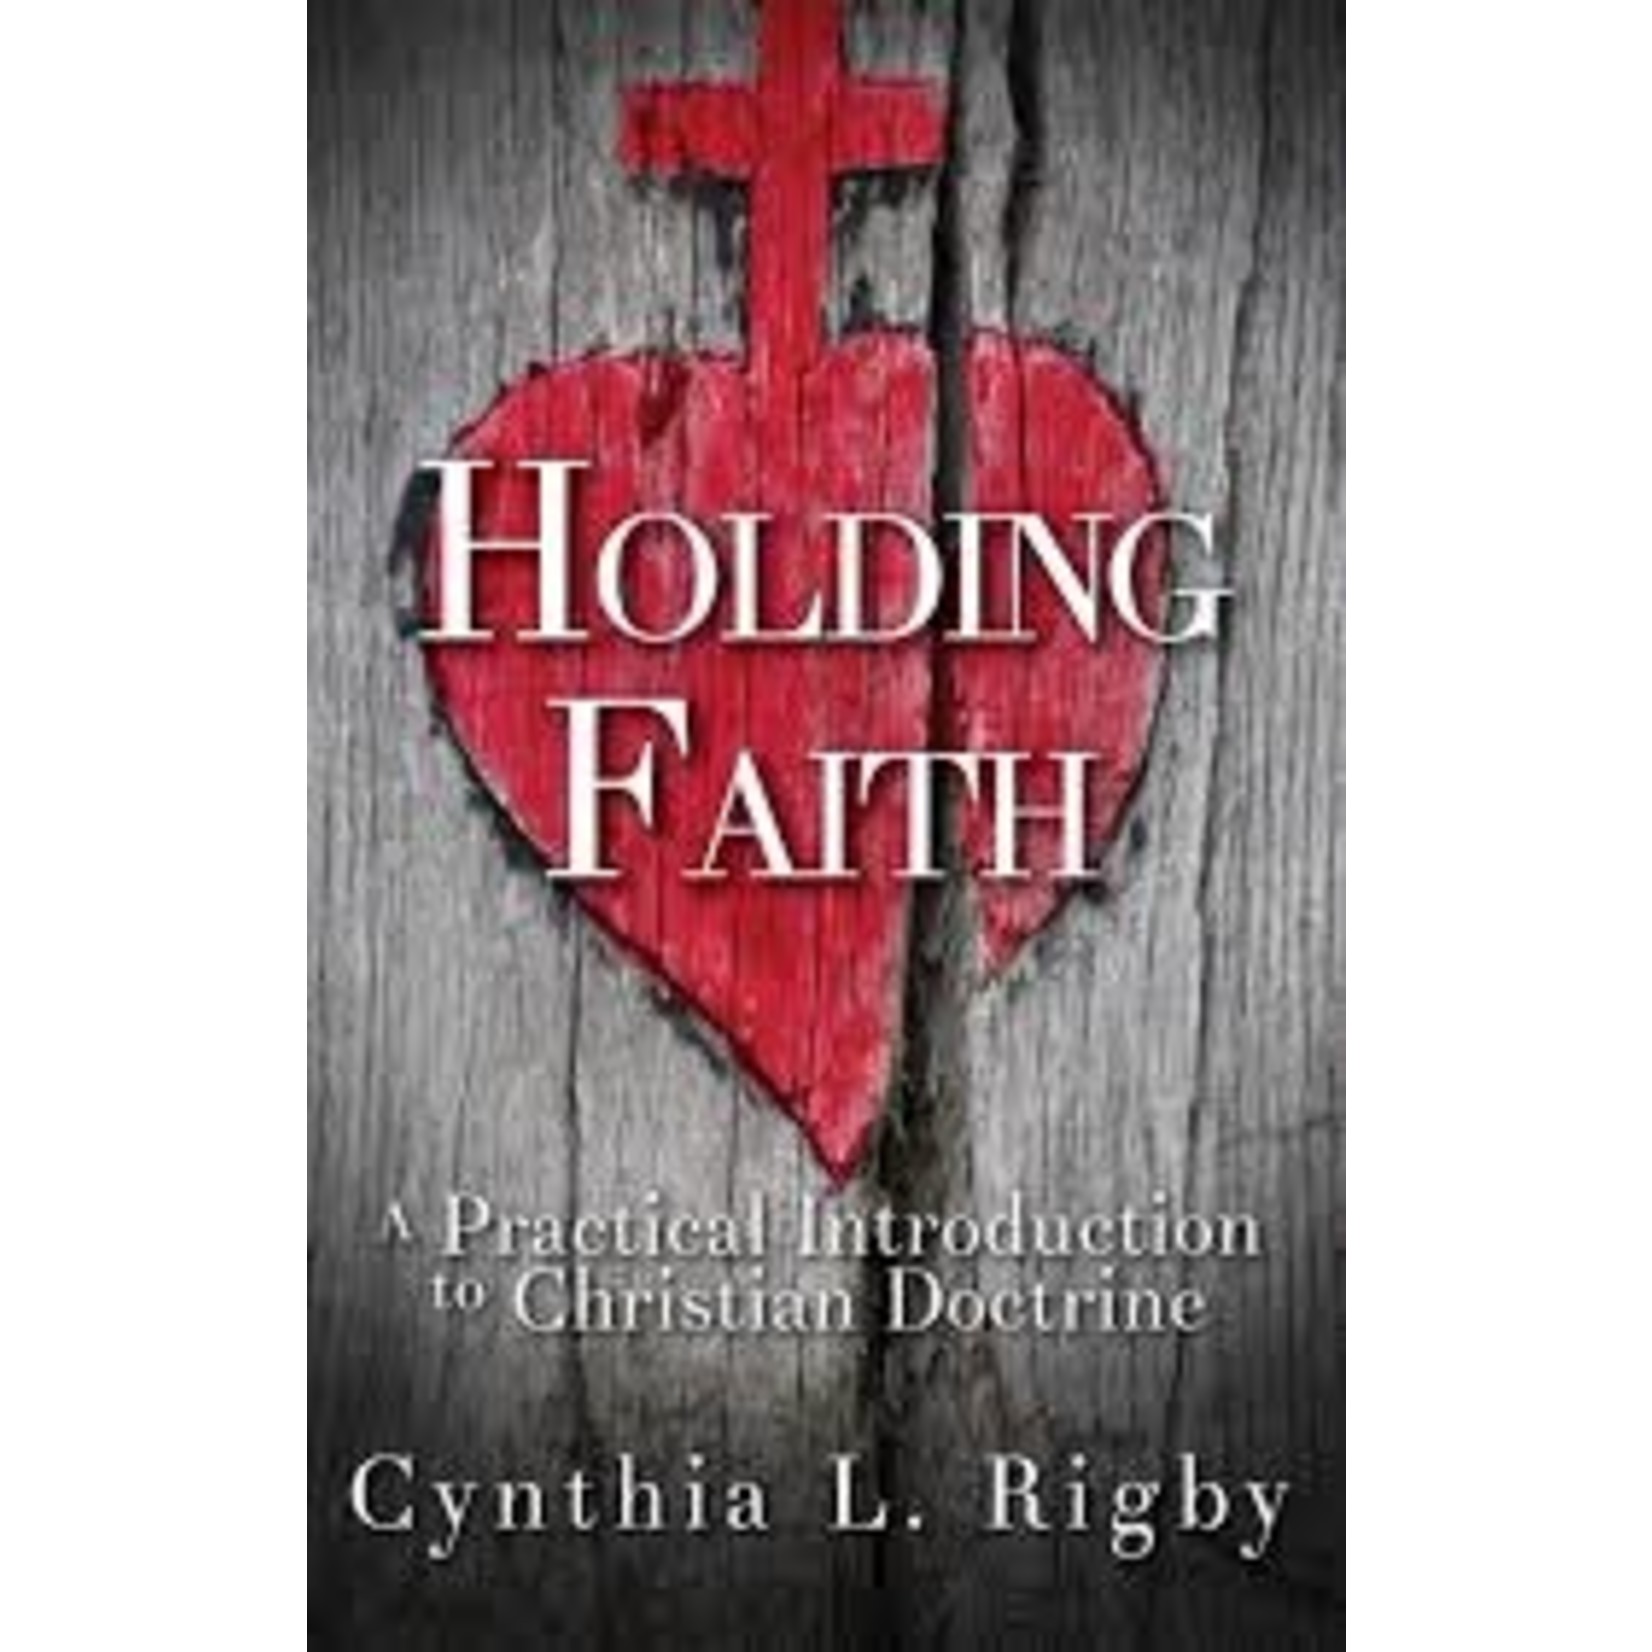 Holding Faith: A Practical Introduction